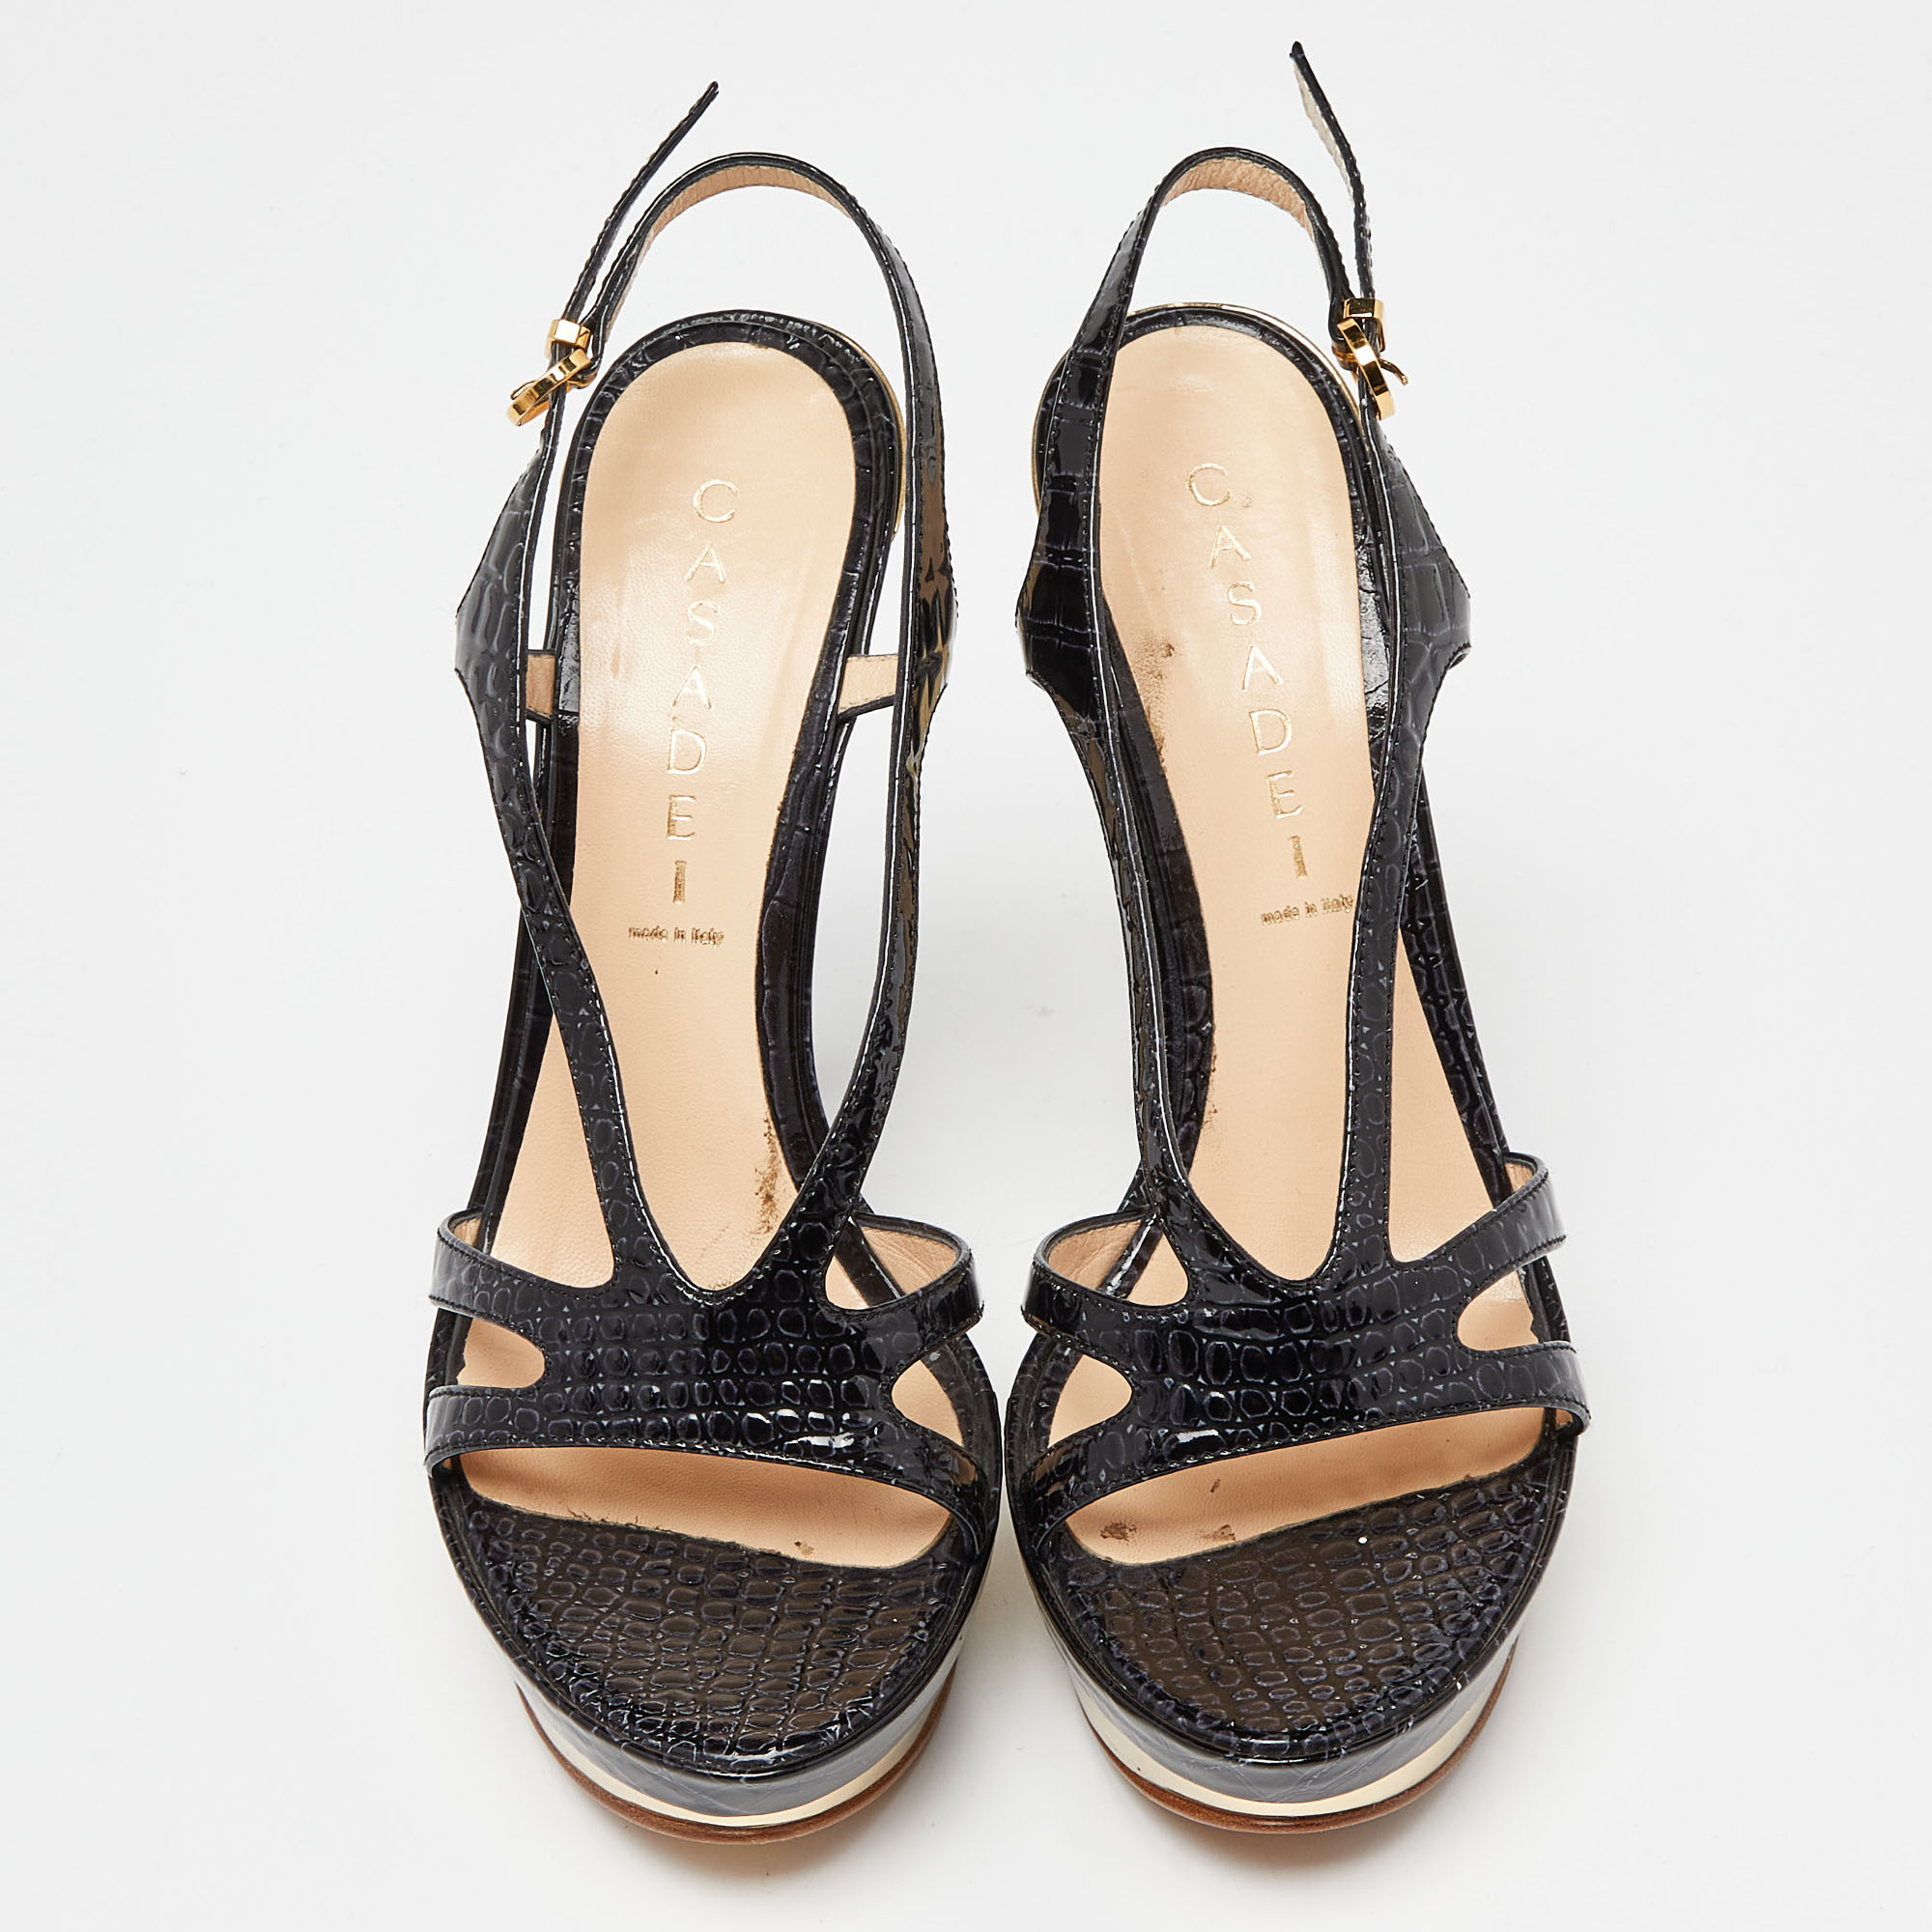 Casadei Black Croc Embossed Leather Ankle Strap Platform Sandals Size 38